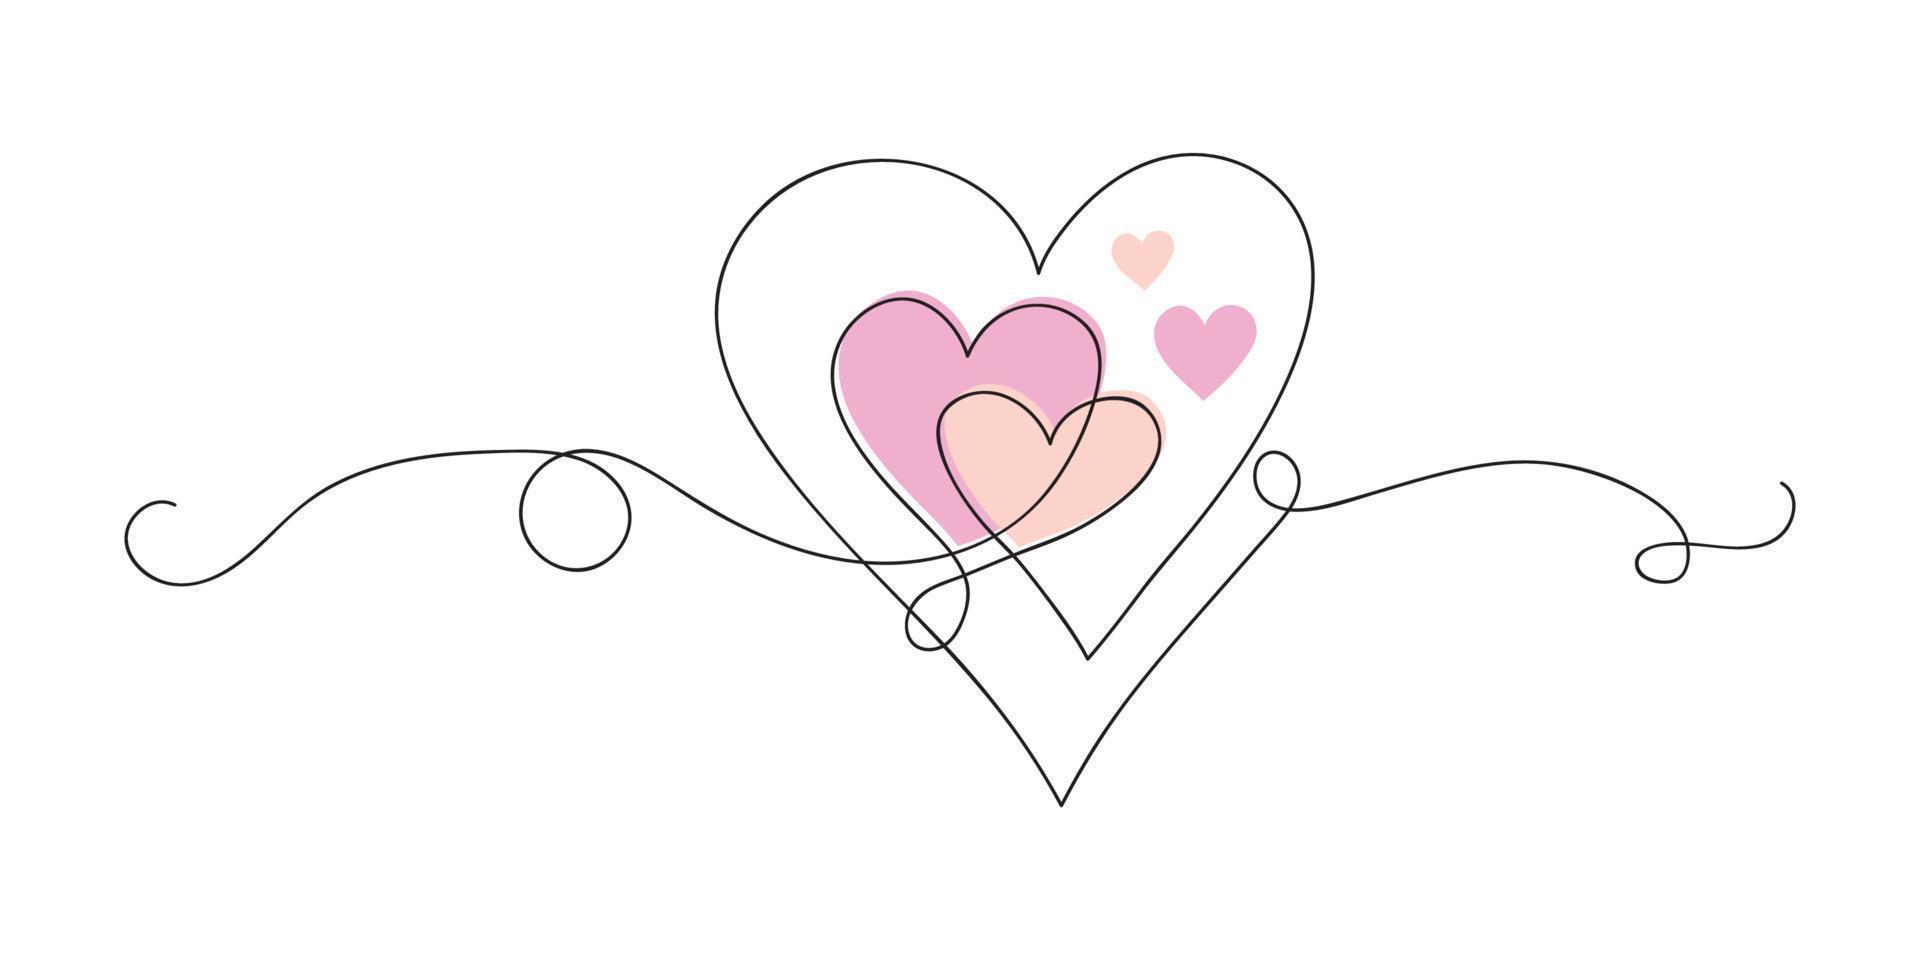 twee harten doorlopend een lijn kunst tekening, valentijnsdag dag concept, hart liefde paar schets artistiek geïsoleerd vector illustratie.